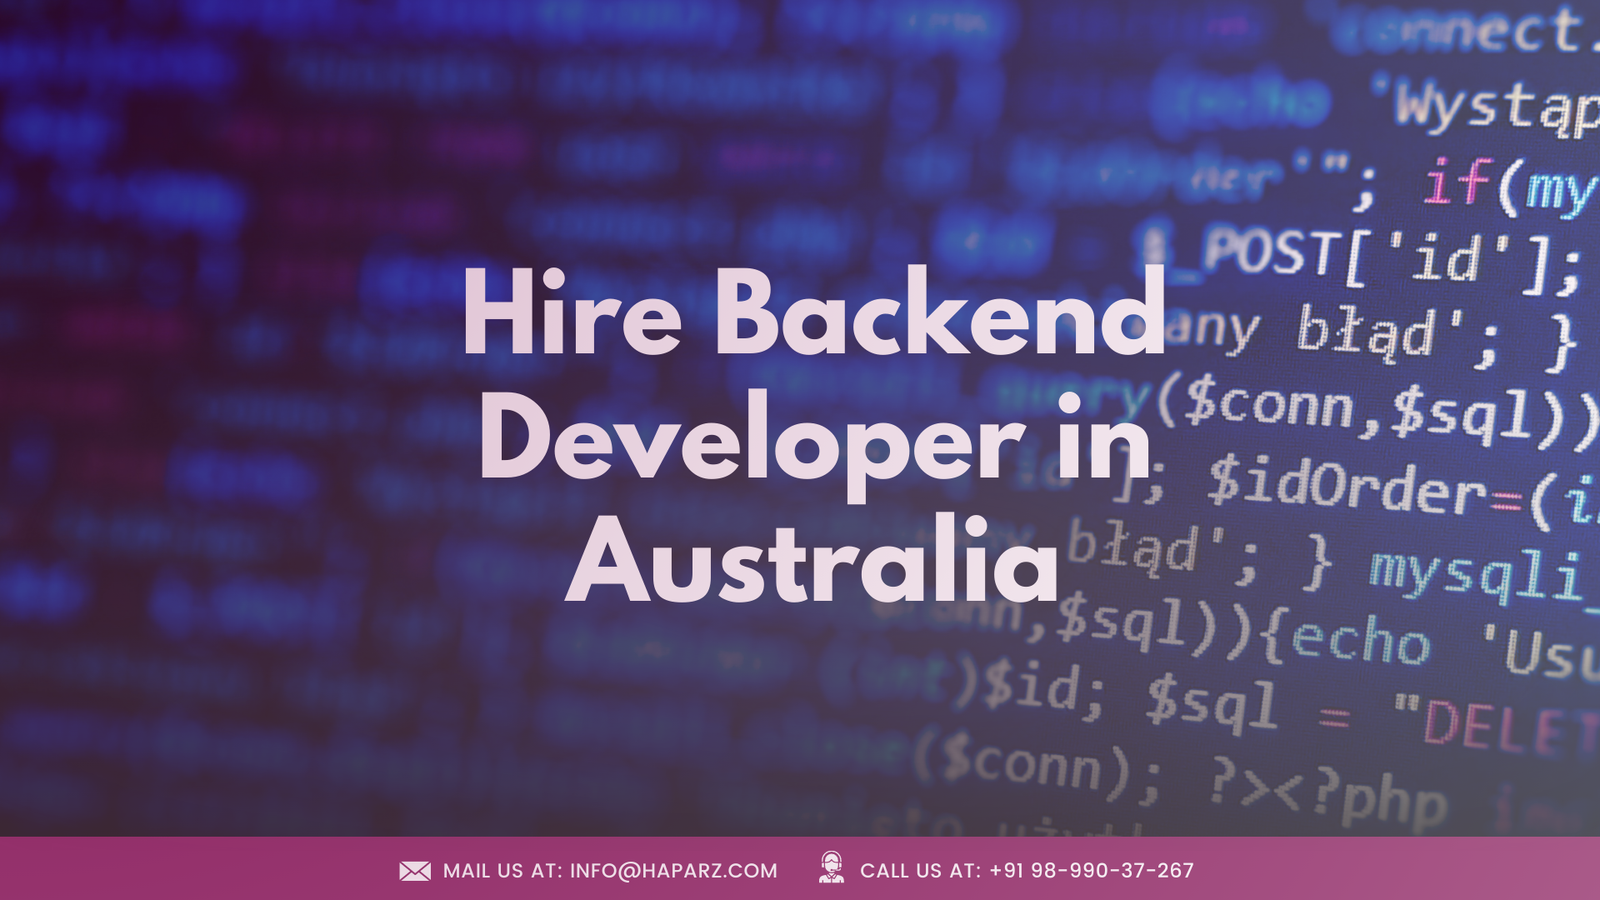 Hire Backend Developer in Australia